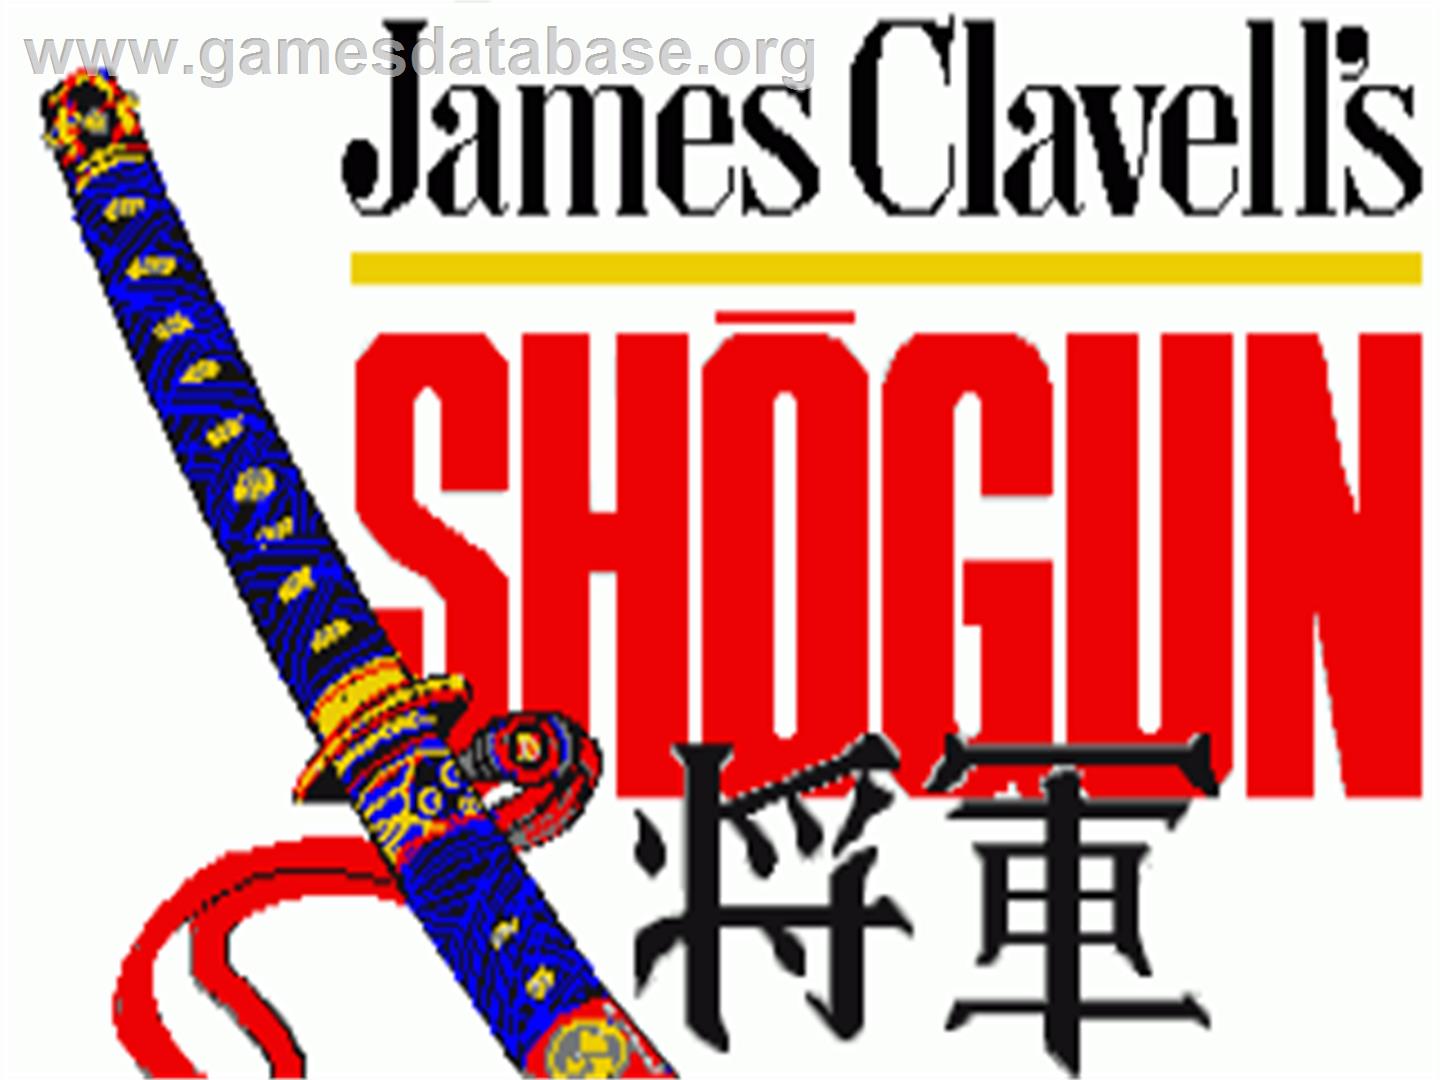 James Clavell's Shogun - Commodore Amiga - Artwork - Title Screen